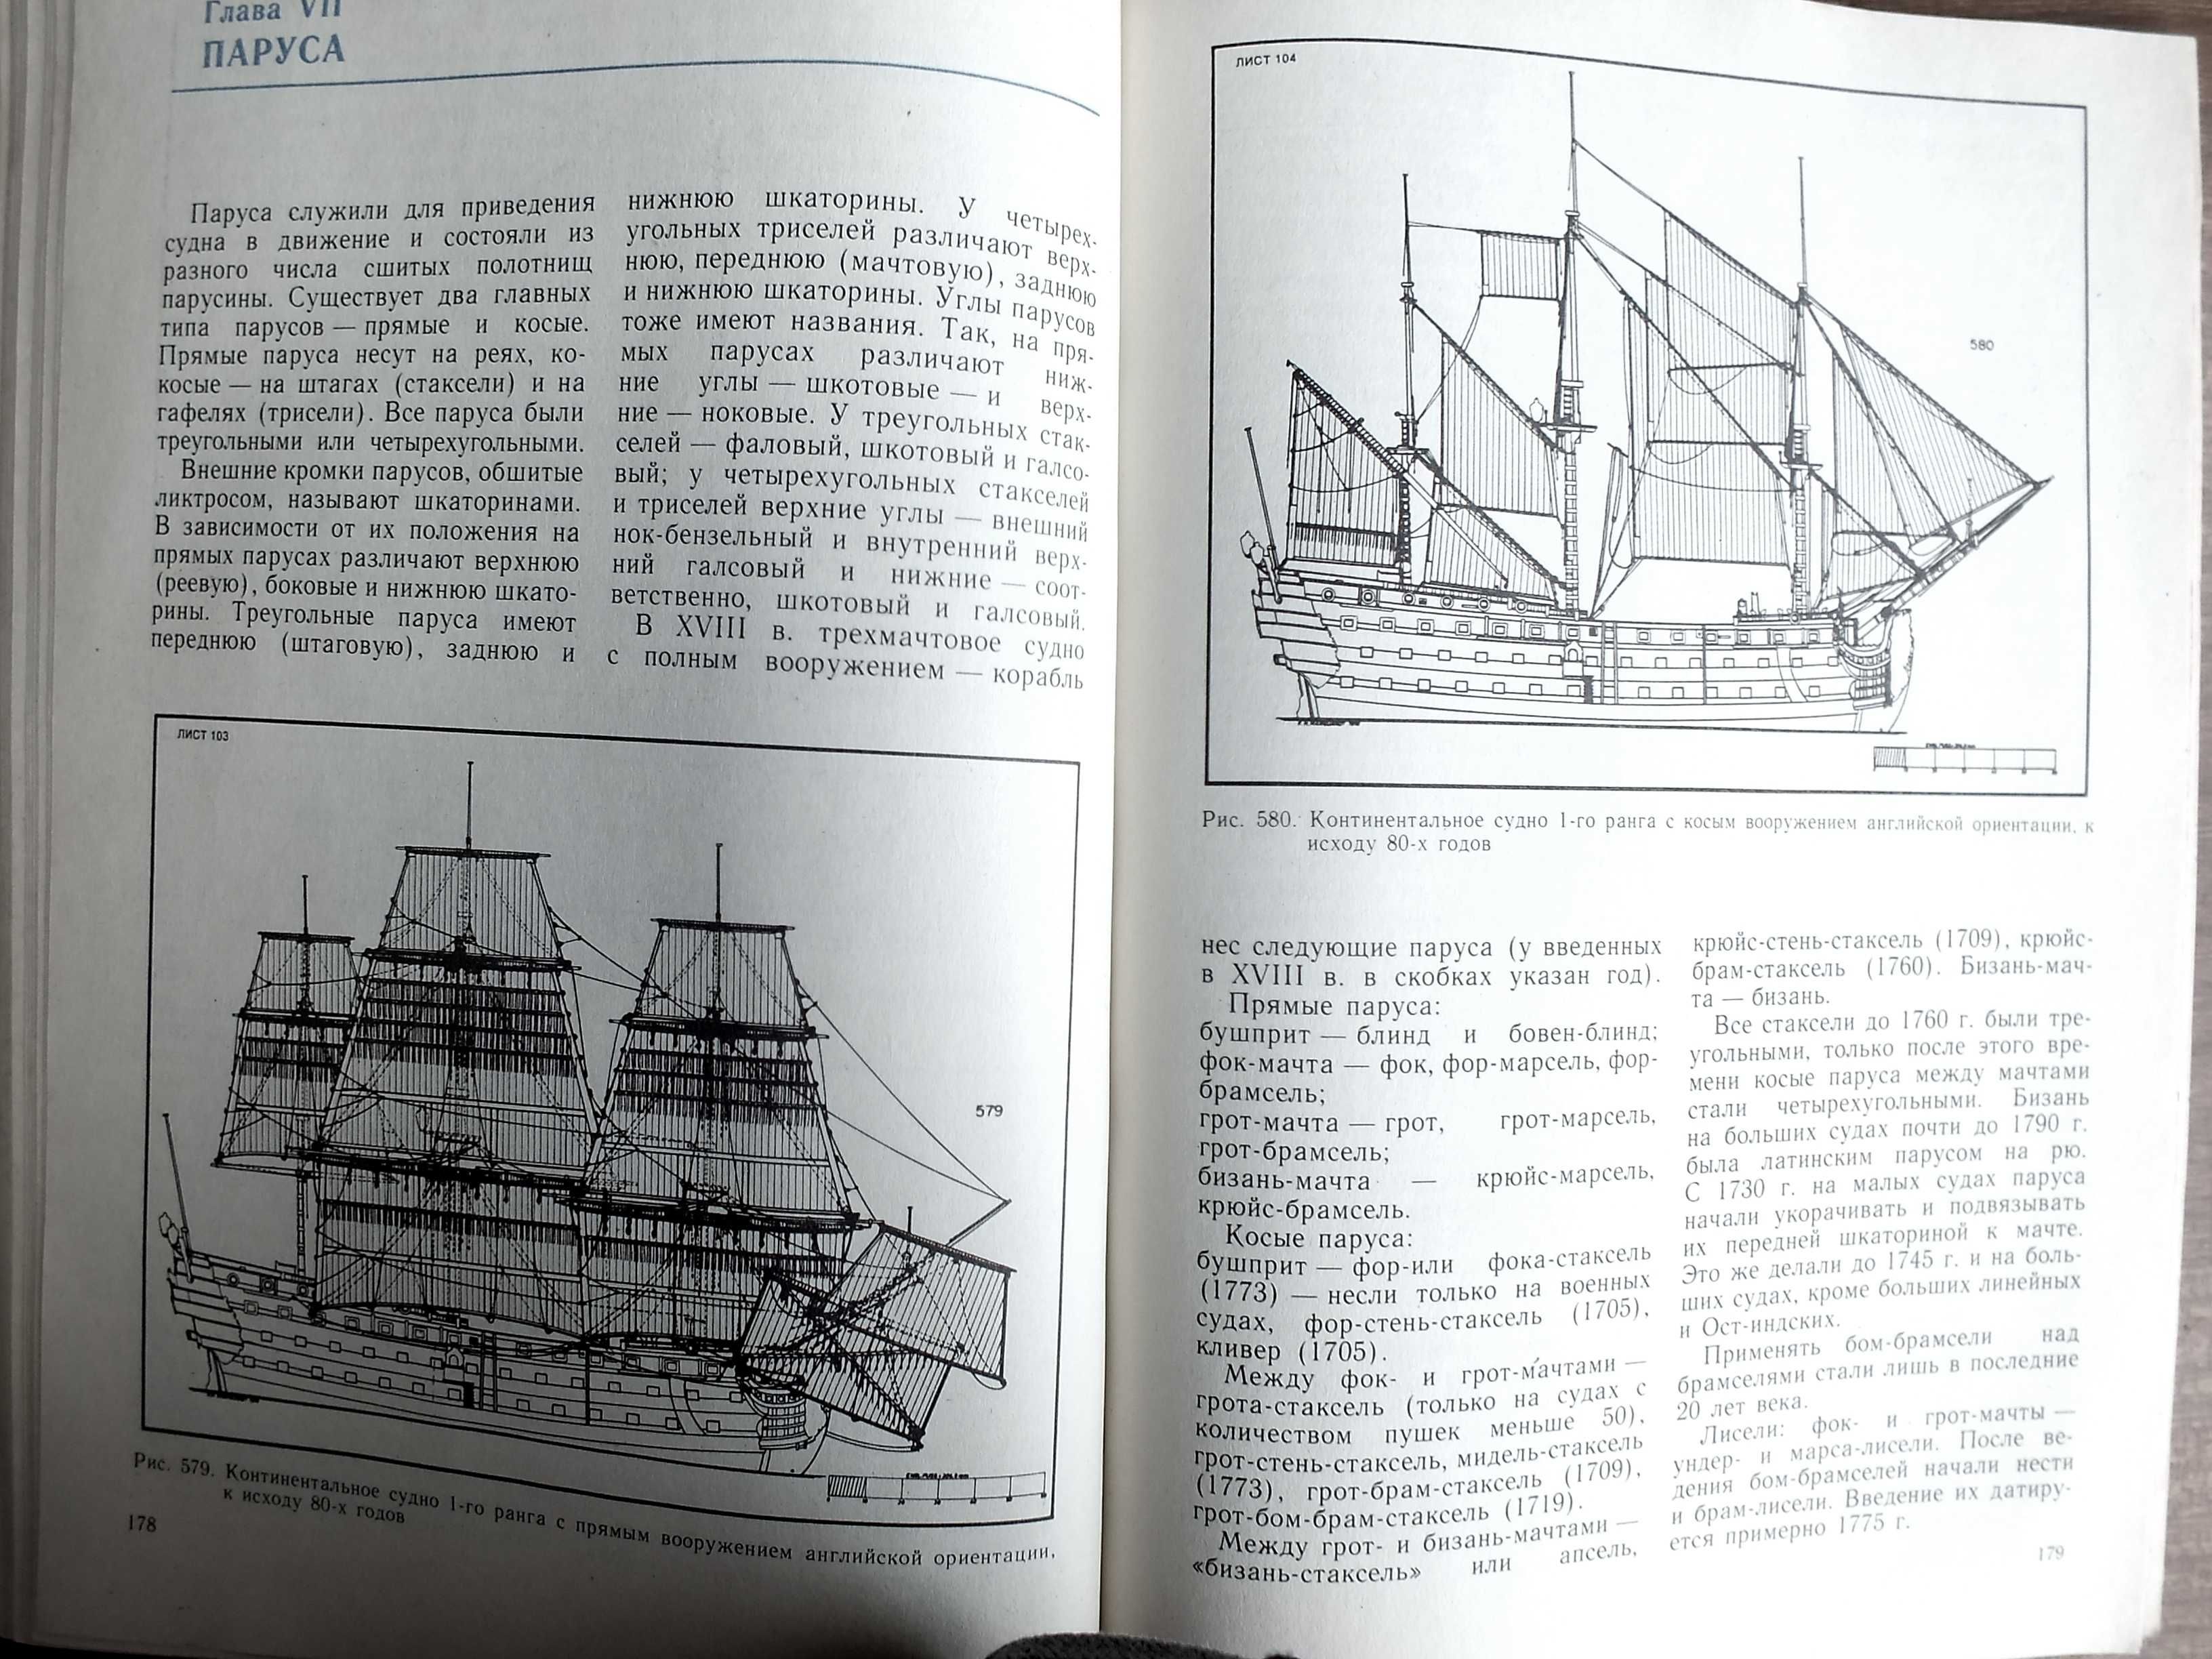 Рангоут, такелаж и паруса судов 18 века. К.Х.Марквардт